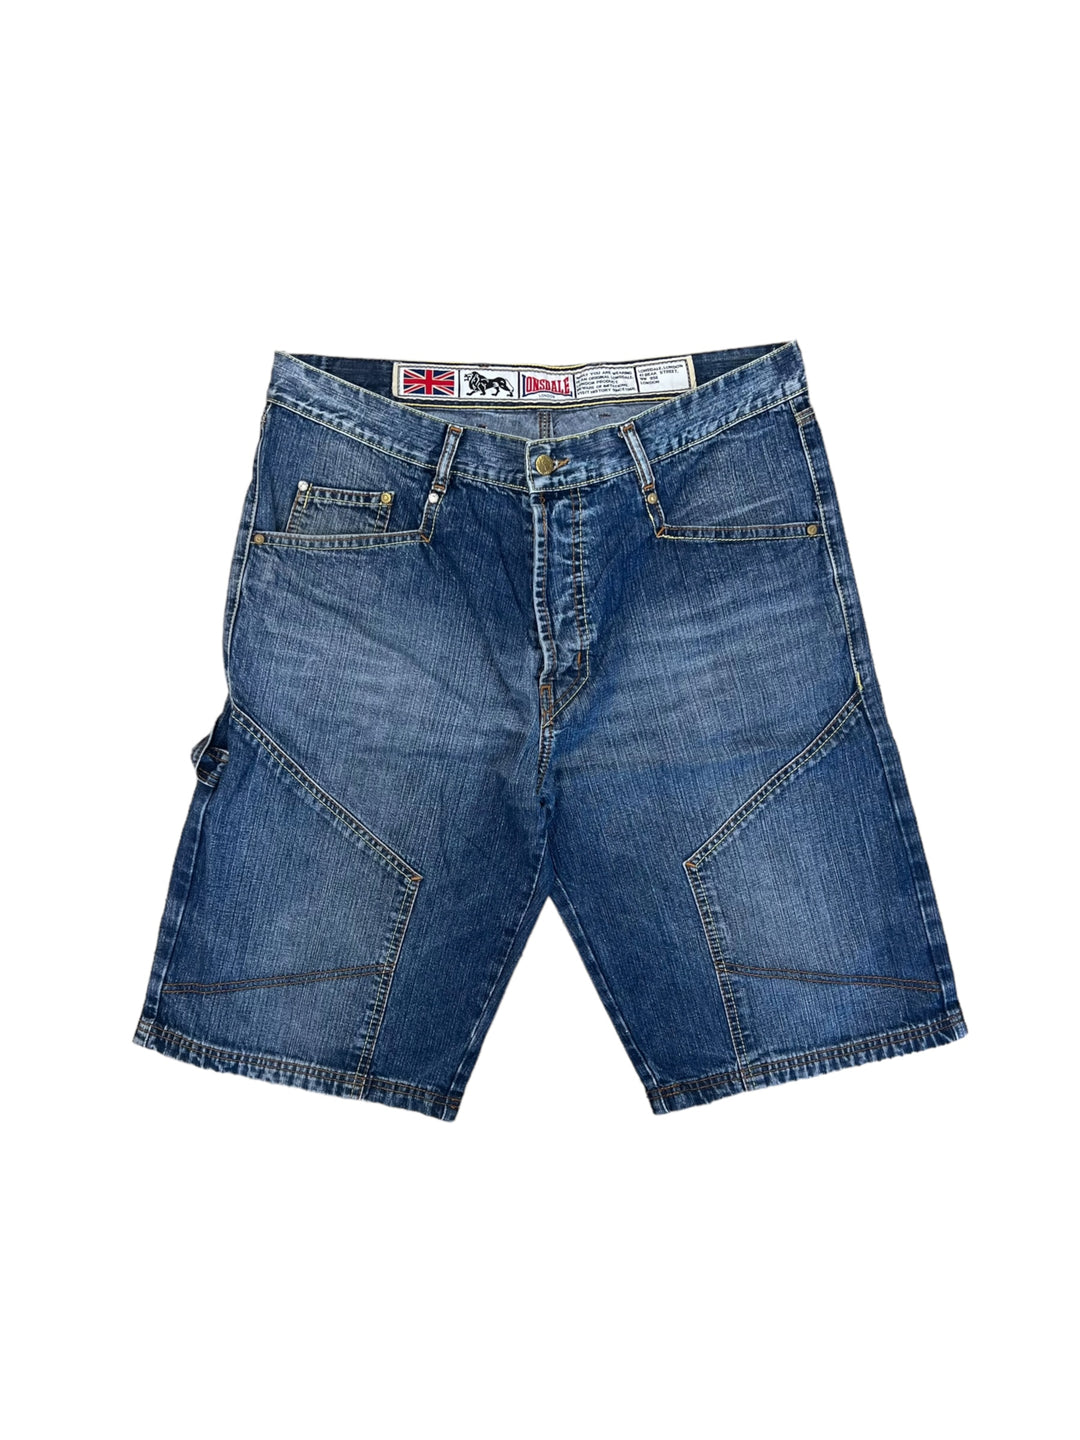 Lonsdale vintage denim shorts men’s large